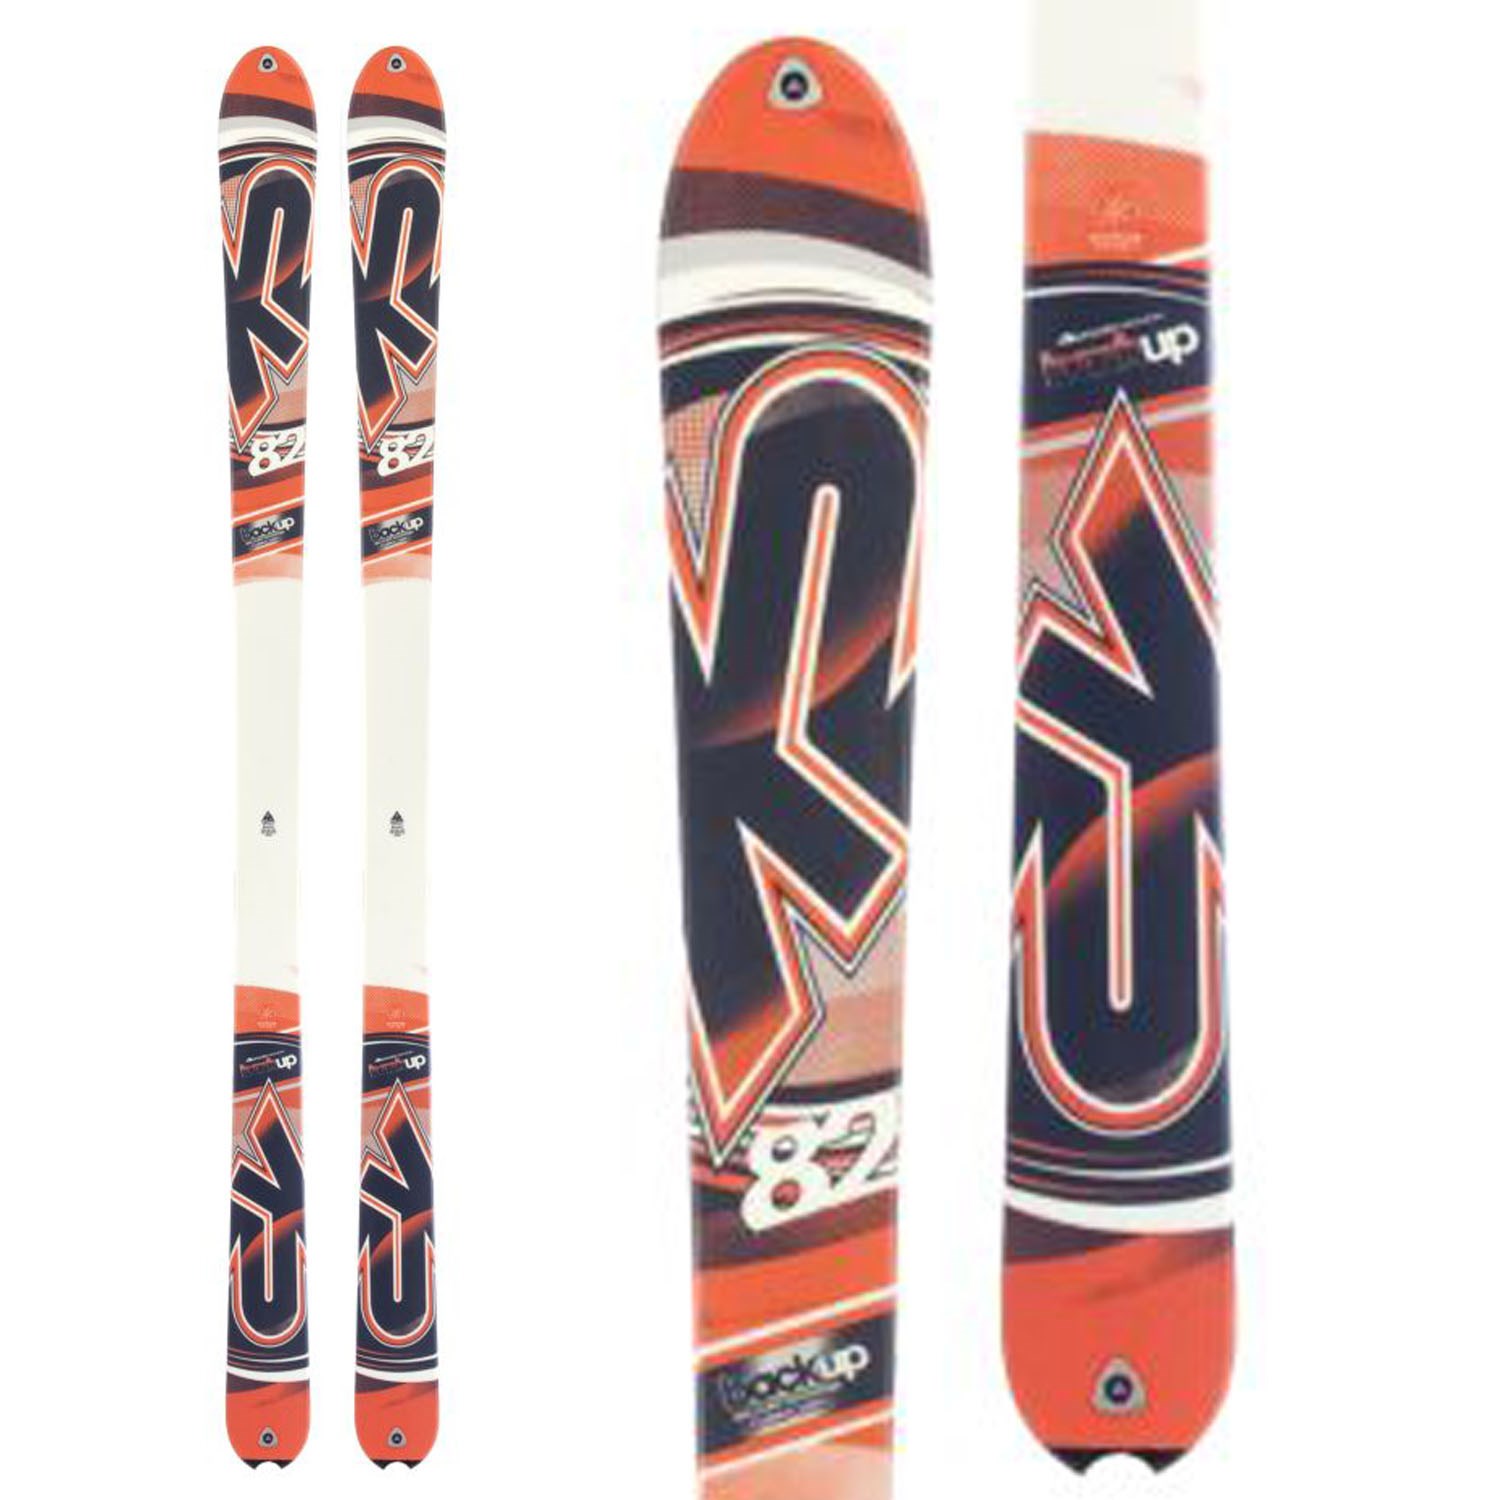 K2 Backup Skis 2013 | evo